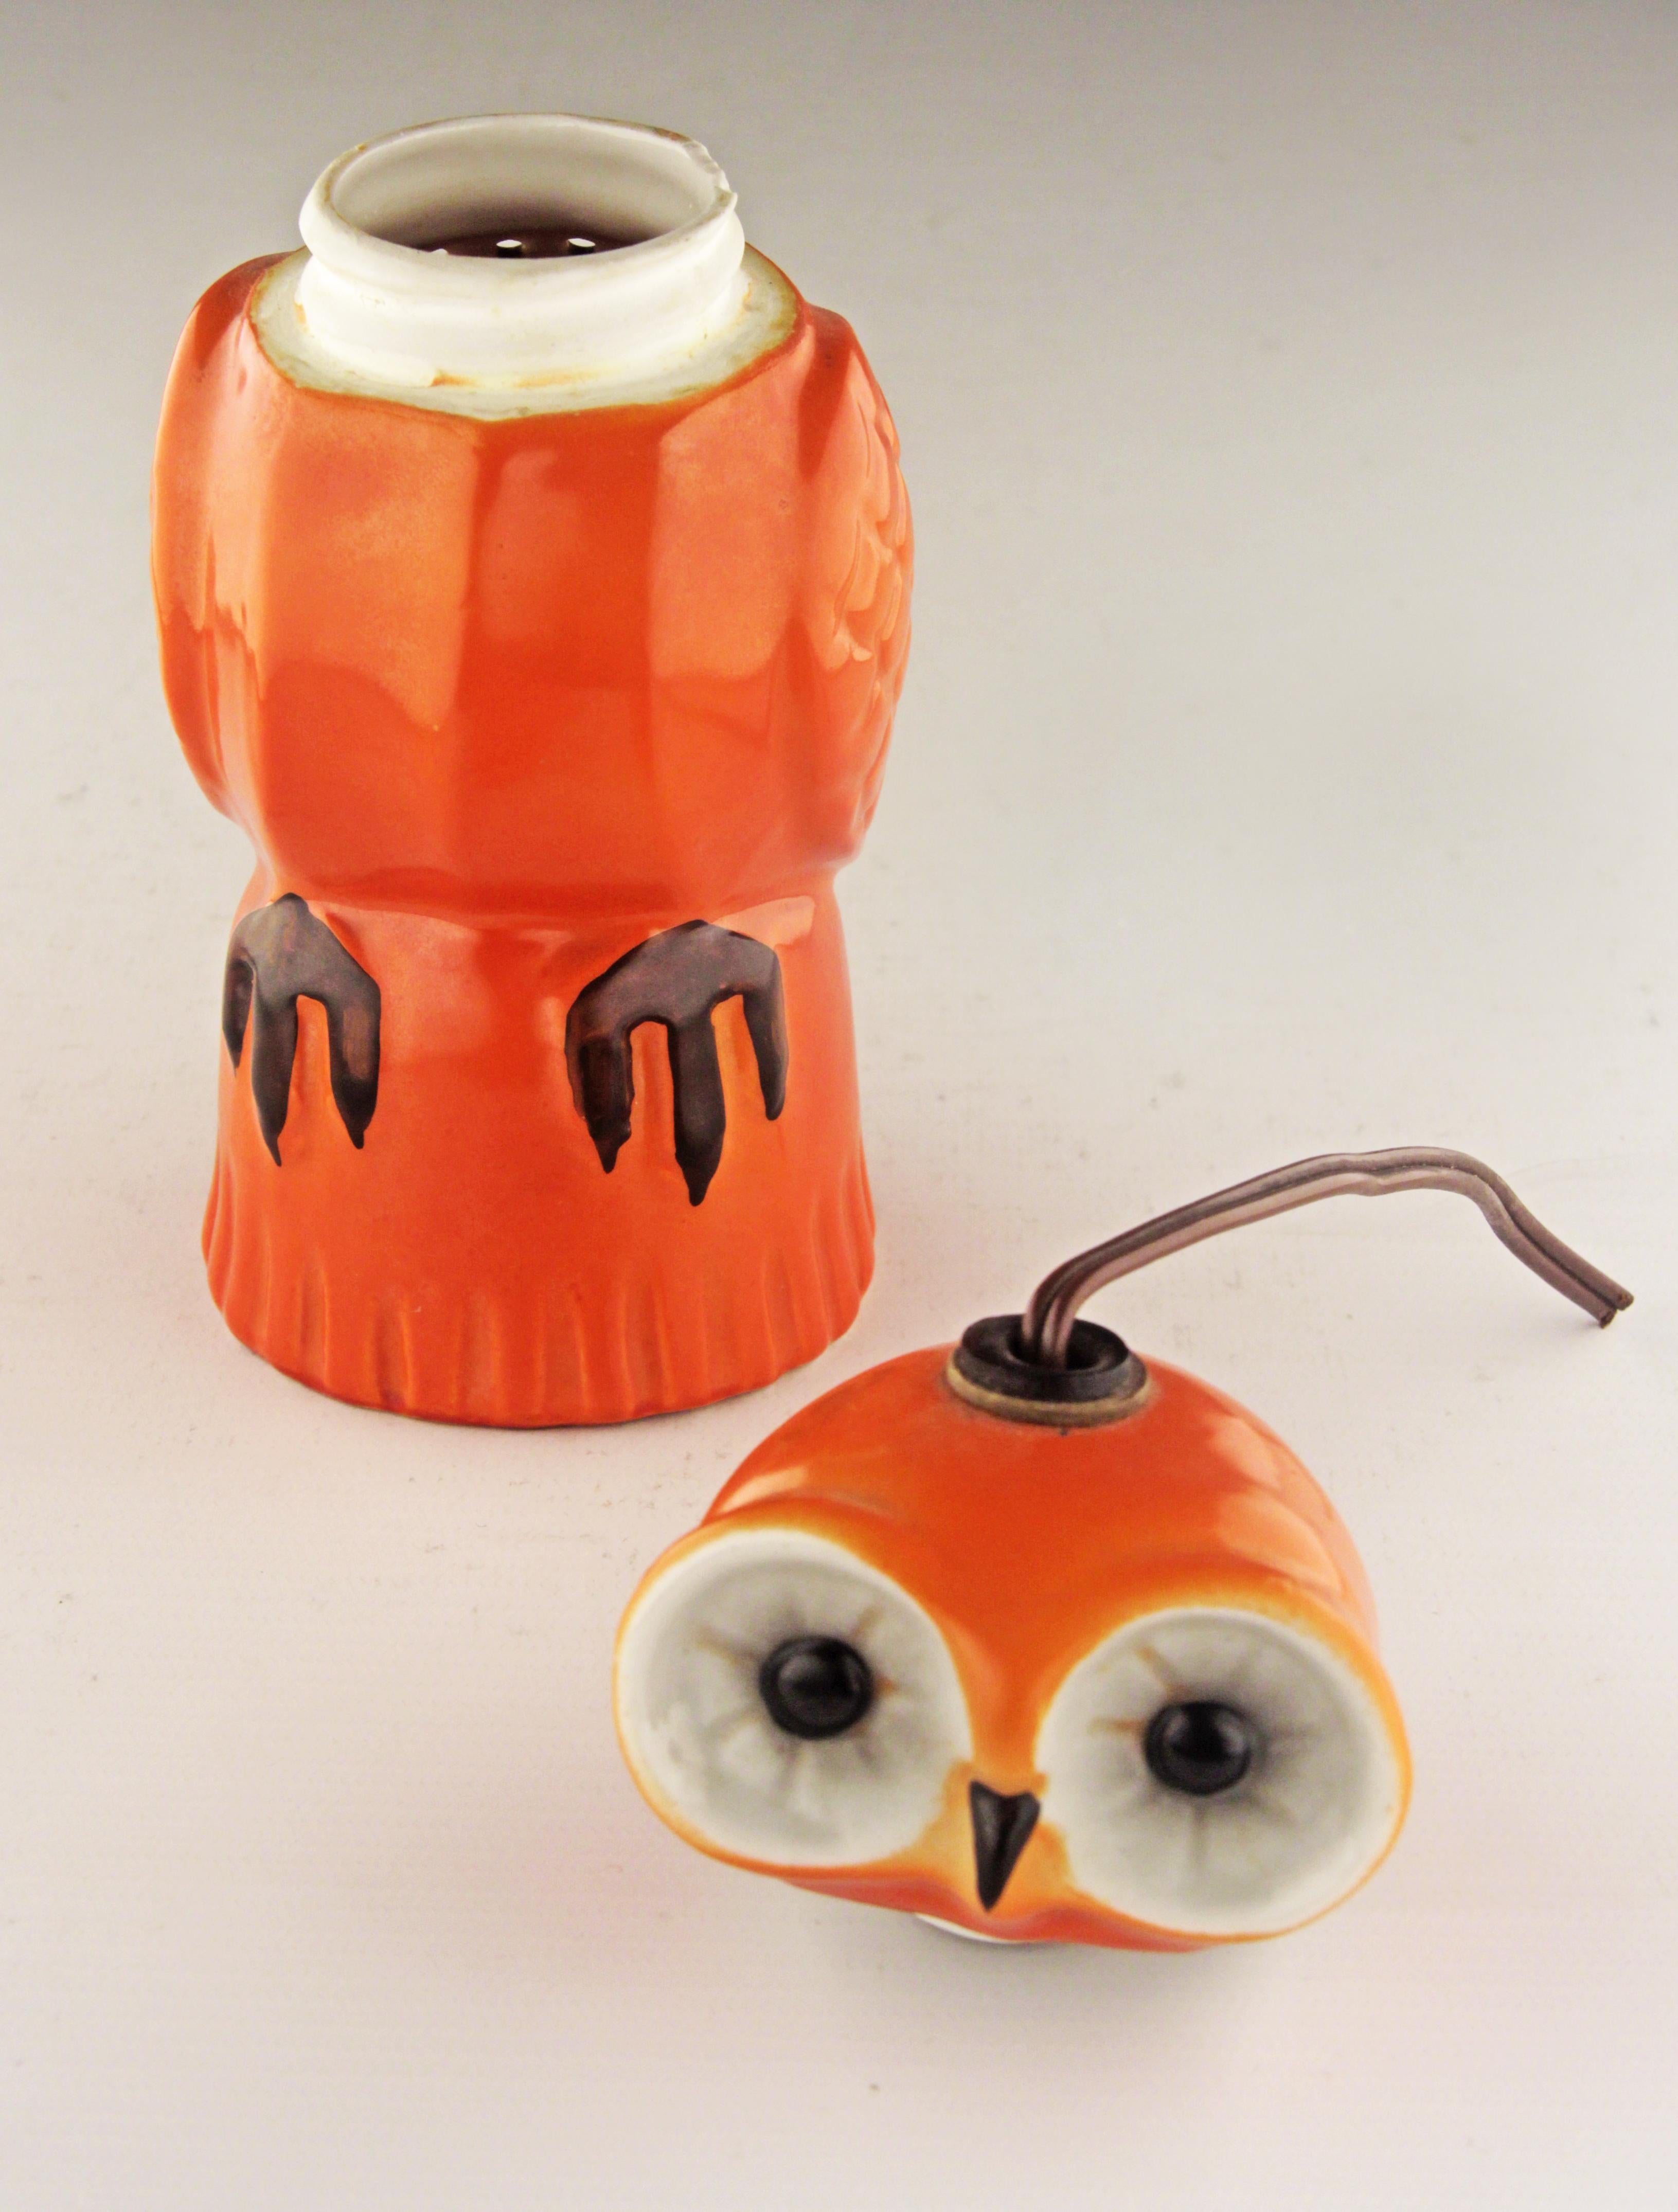 Paint Art Déco Enameled Porcelain Owl-Shapped Perfume Lamp by German Company Aerozon For Sale